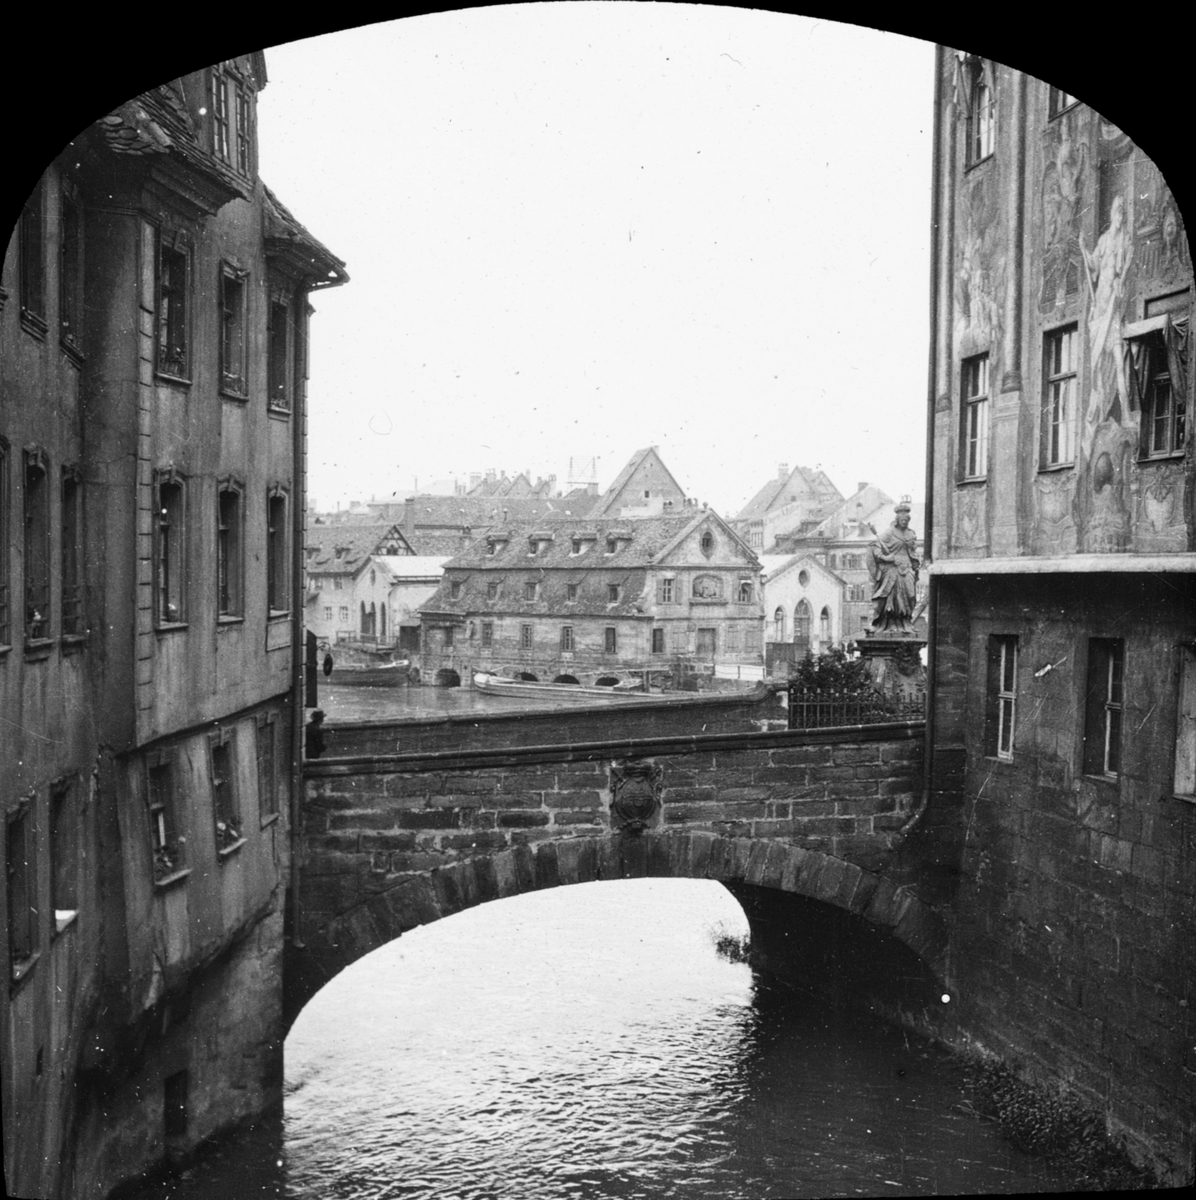 Skioptikonbild med motiv från Bamberg, Altes Rathaus med valvbron Untere Brücke över floden Regnitz.
Bilden har förvarats i kartong märkt: Resan 1906. Bamberg 6. Regensburg 2.